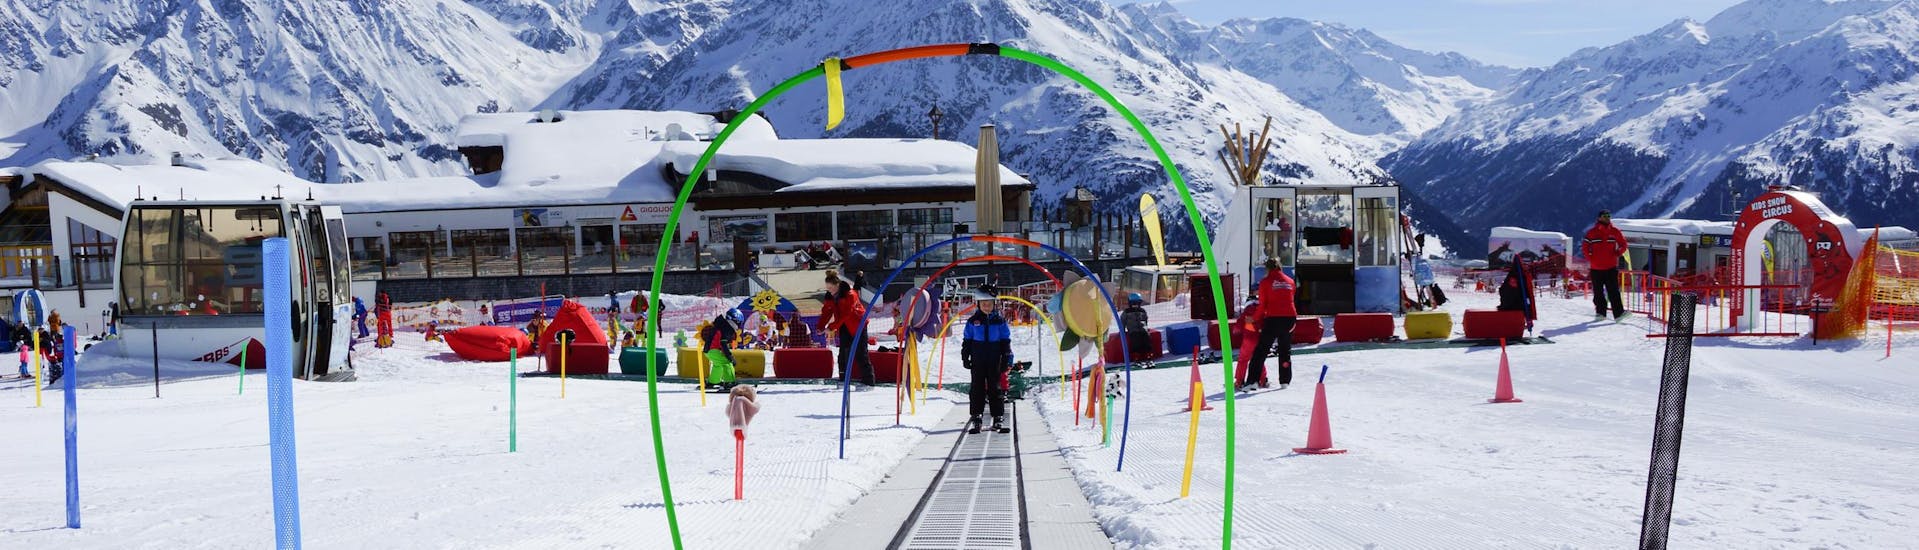 Lezioni di sci per bambini (9-15 anni) per tutti i livelli con noleggio sci incluso.